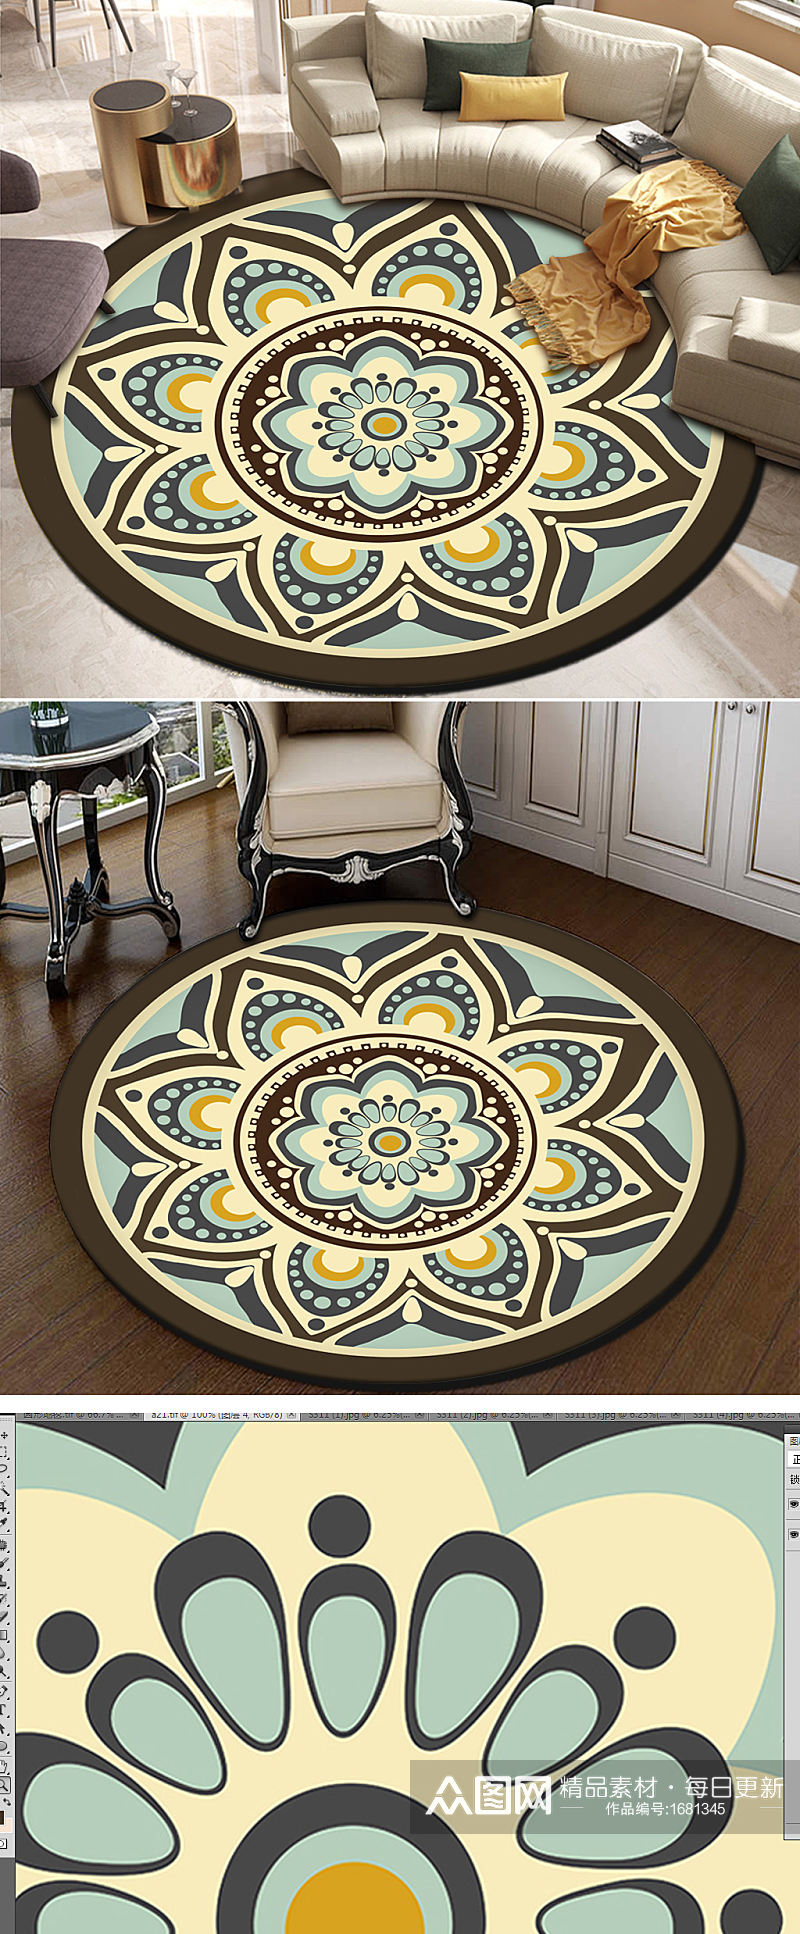 欧式现代简约古典花纹轻奢钢琴圆形地毯素材